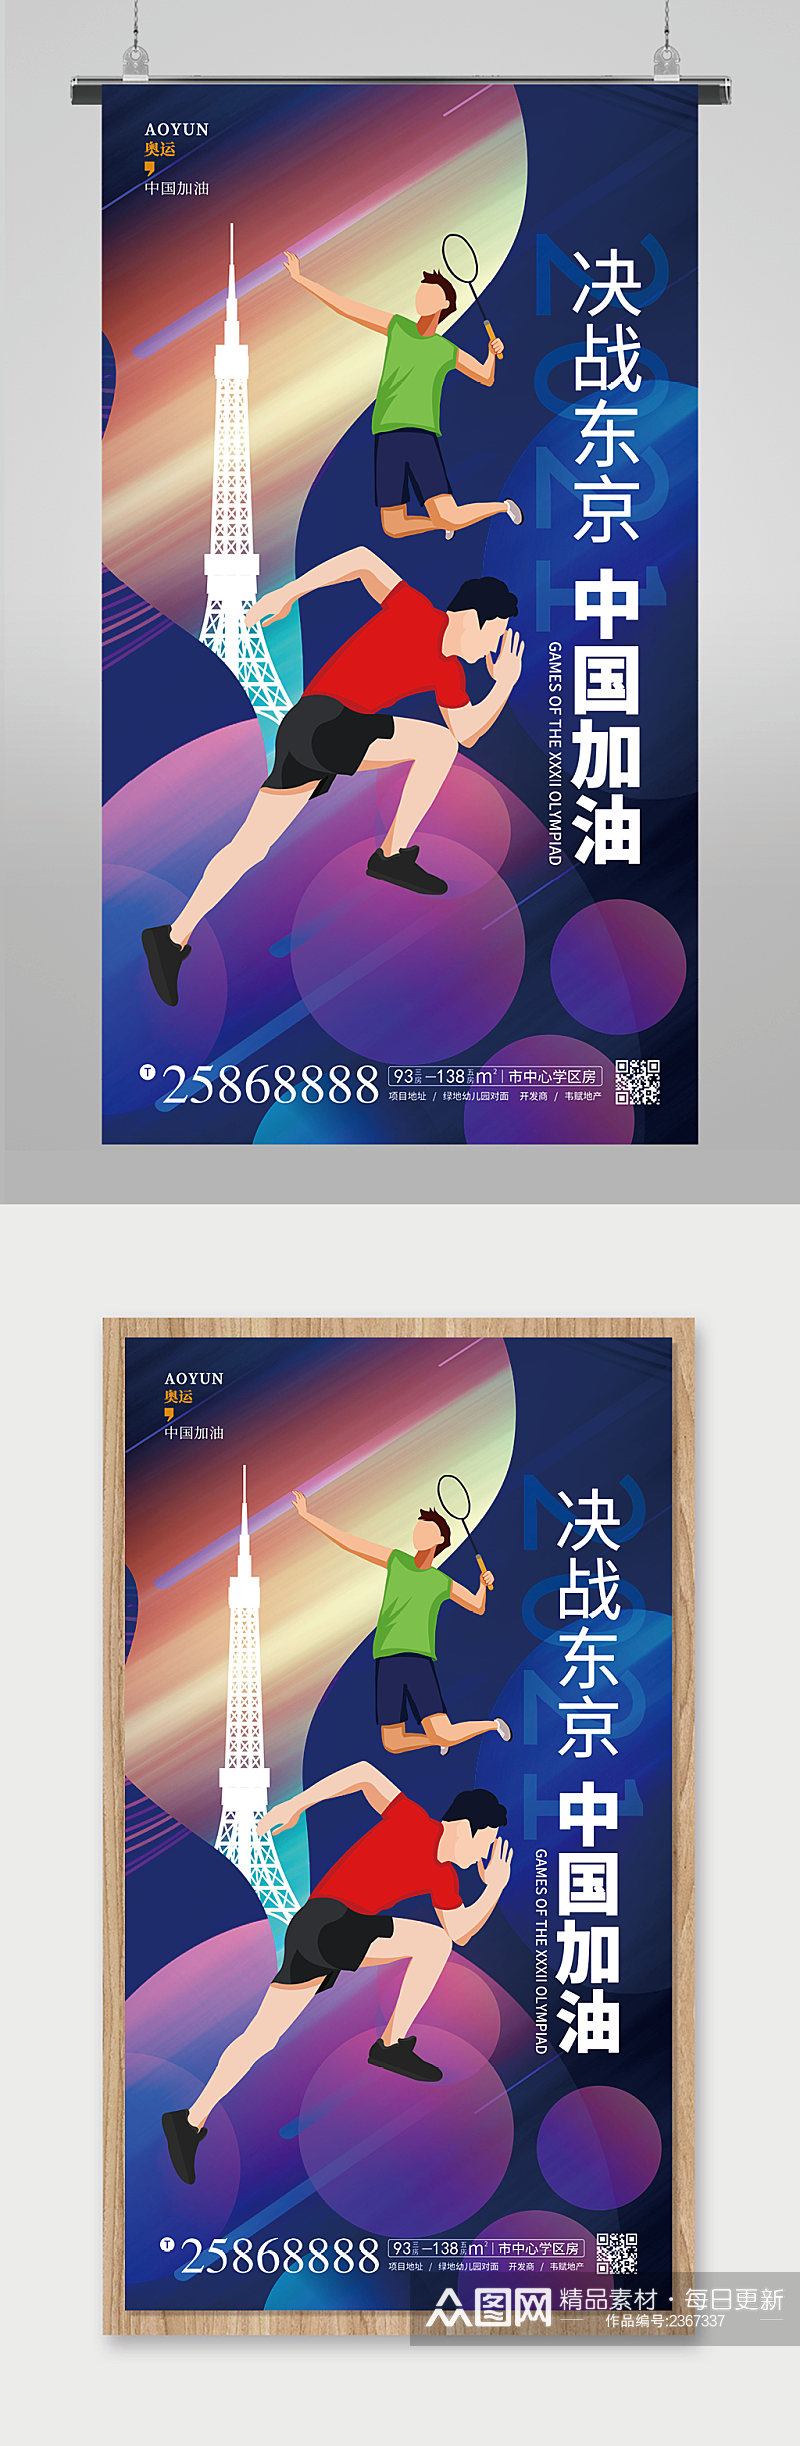 东京中国加油东京奥运会宣传海报素材